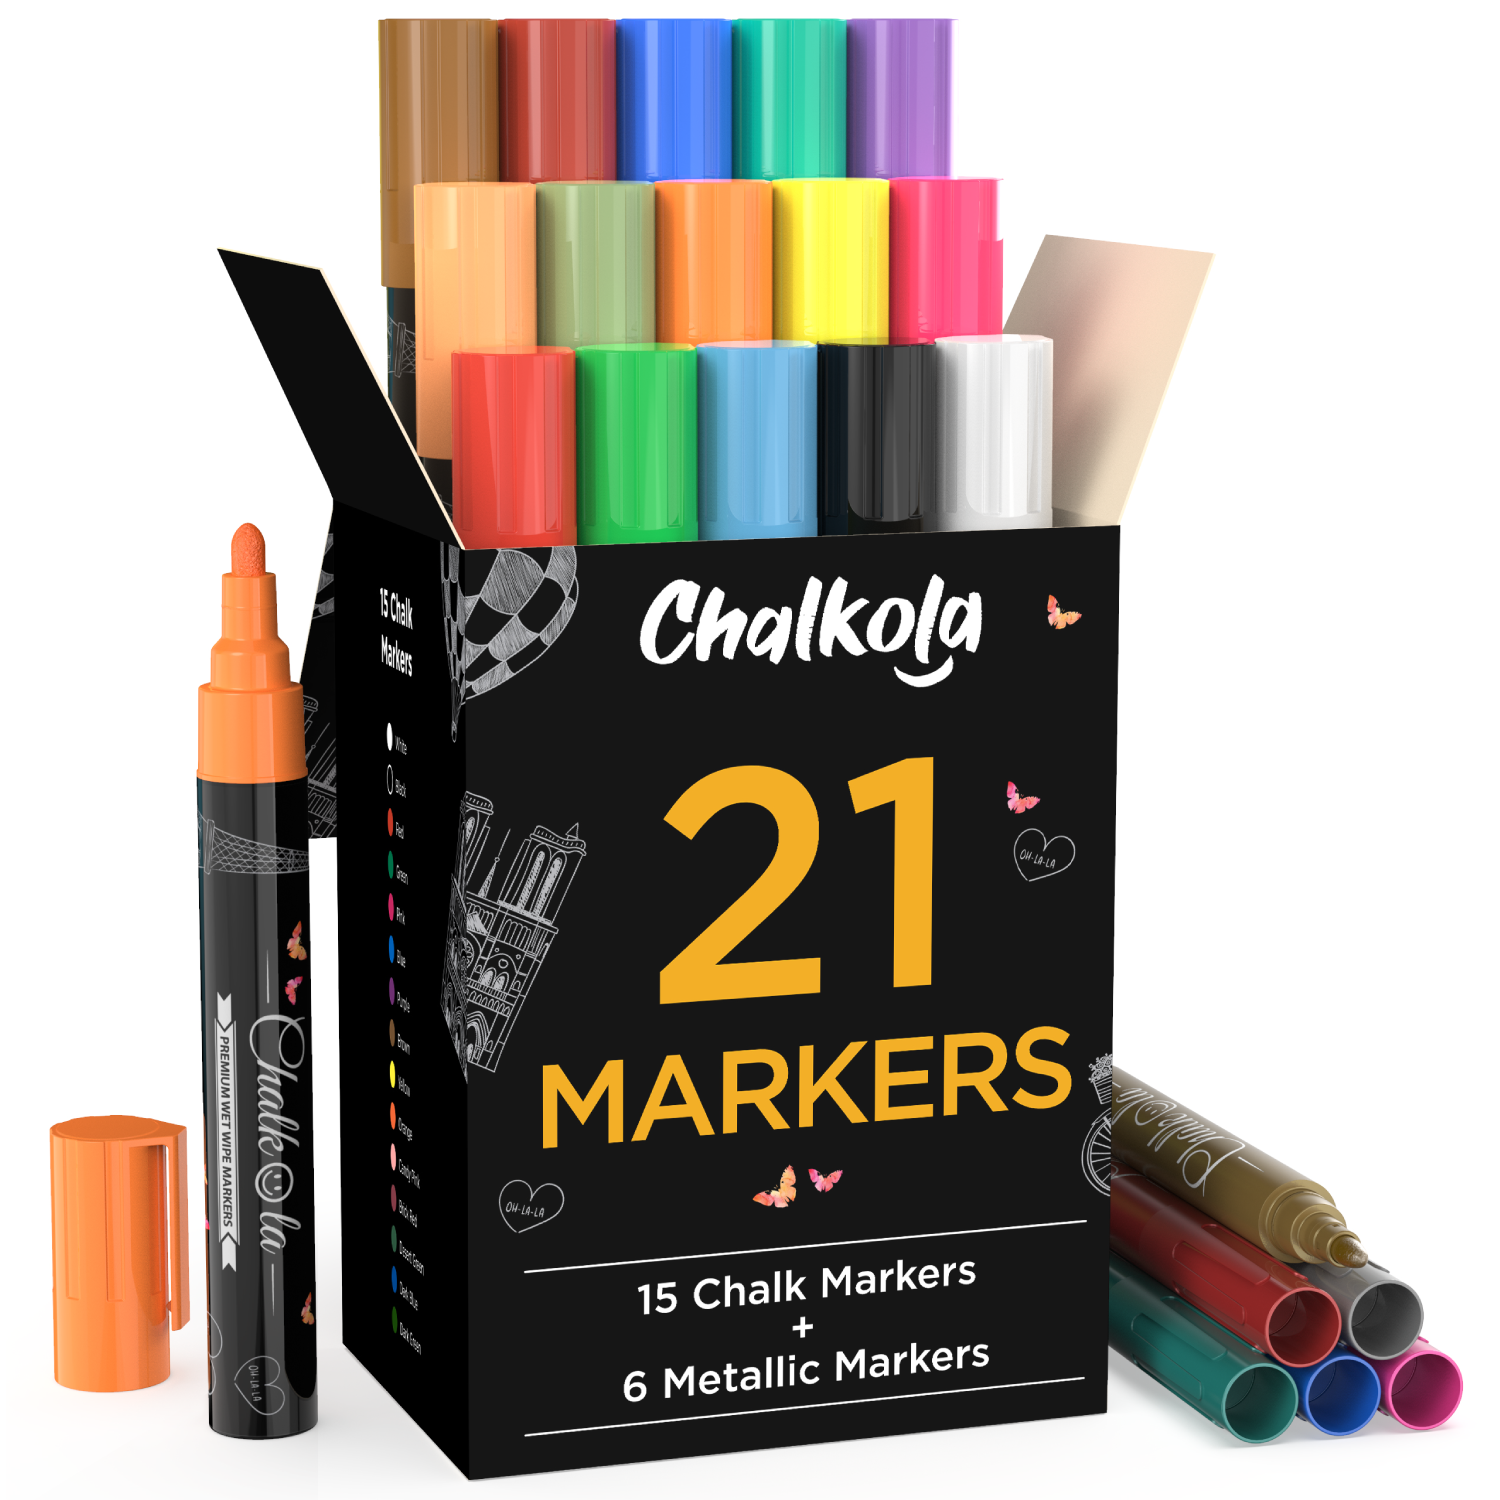 American Crafts™ White Erasable Chalk Marker